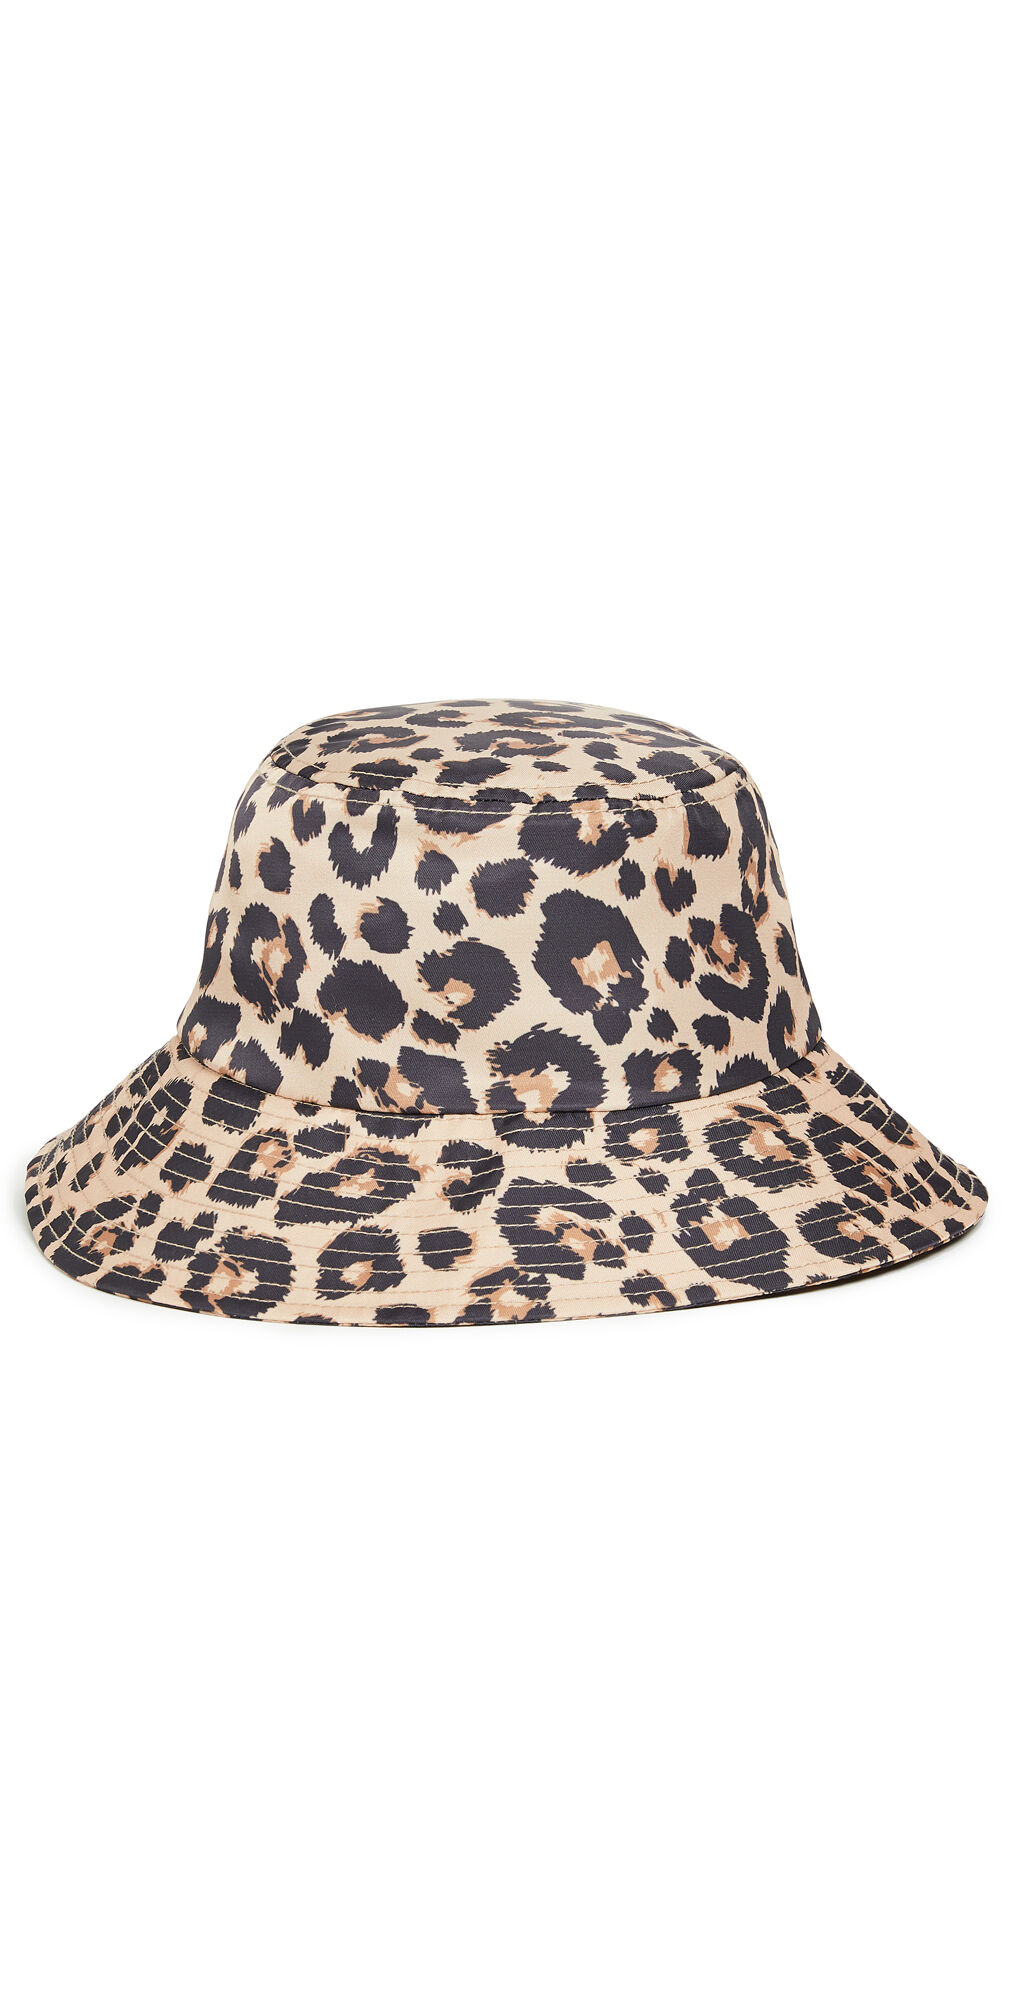 Loeffler Randall Bucket Hat Leopard One Size  Leopard  size:One Size